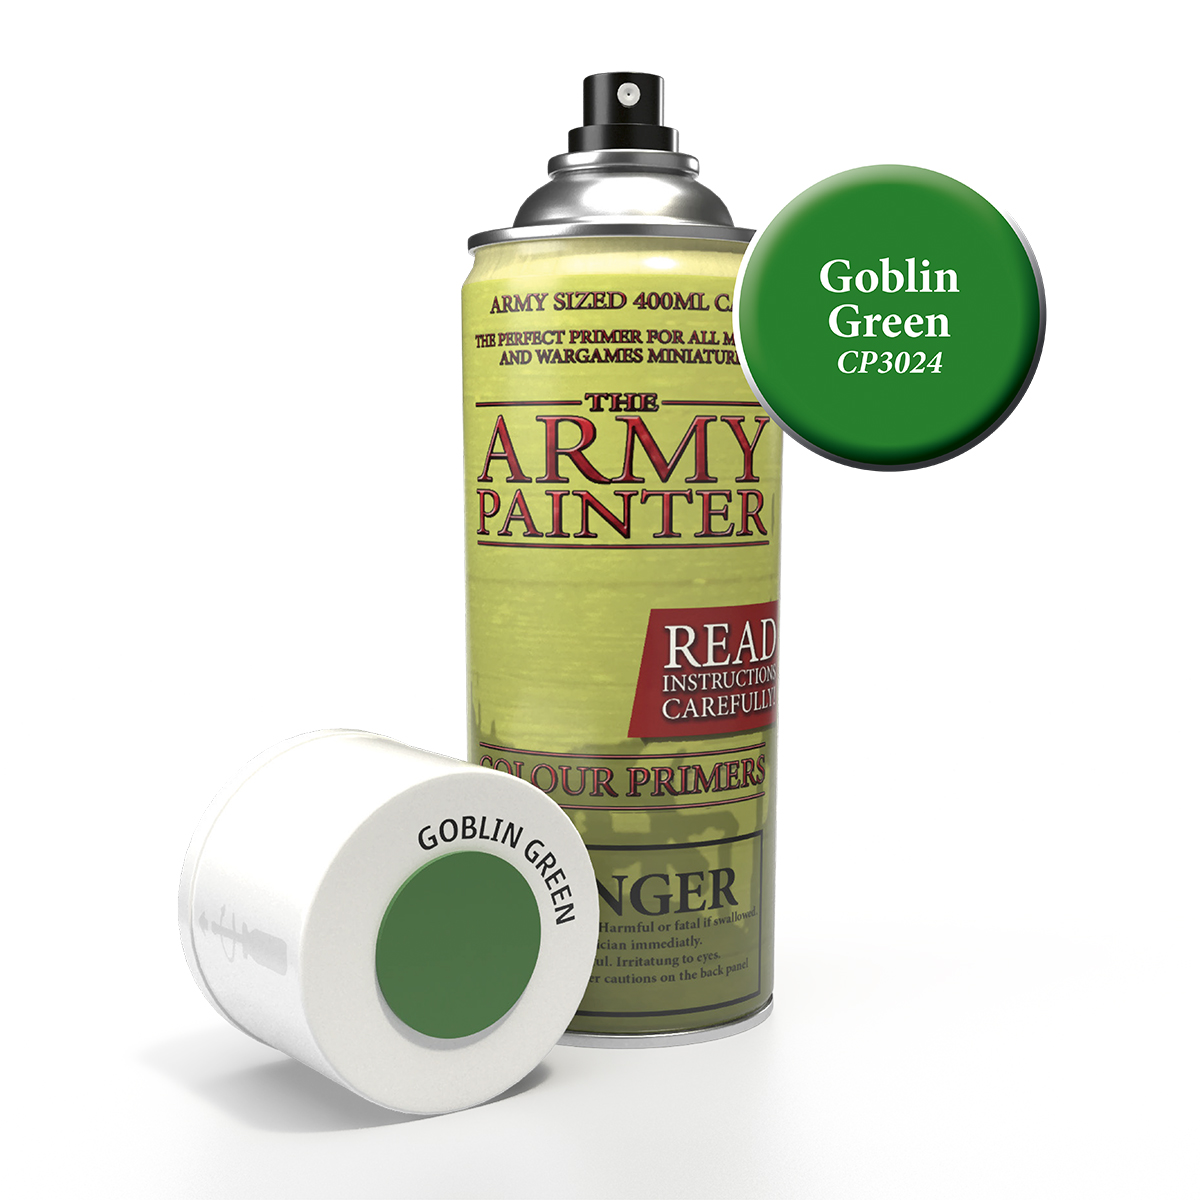 ArmyPainter Colorspray Goblin Green